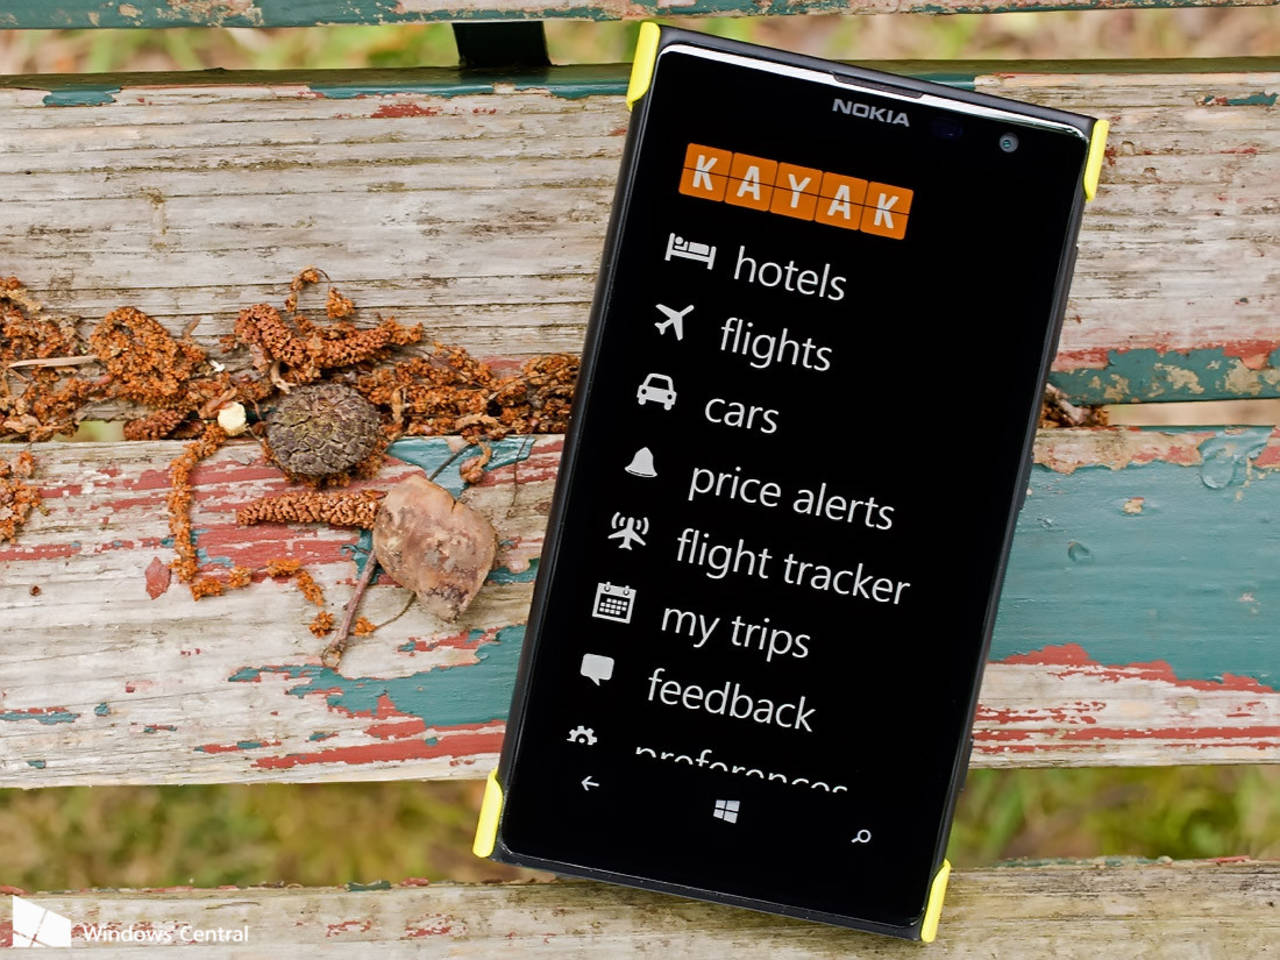 Mejor precio. Kayak es una app ideal para los viajeros, dado que permite hacer reservaciones de vuelos, hoteles y autos.